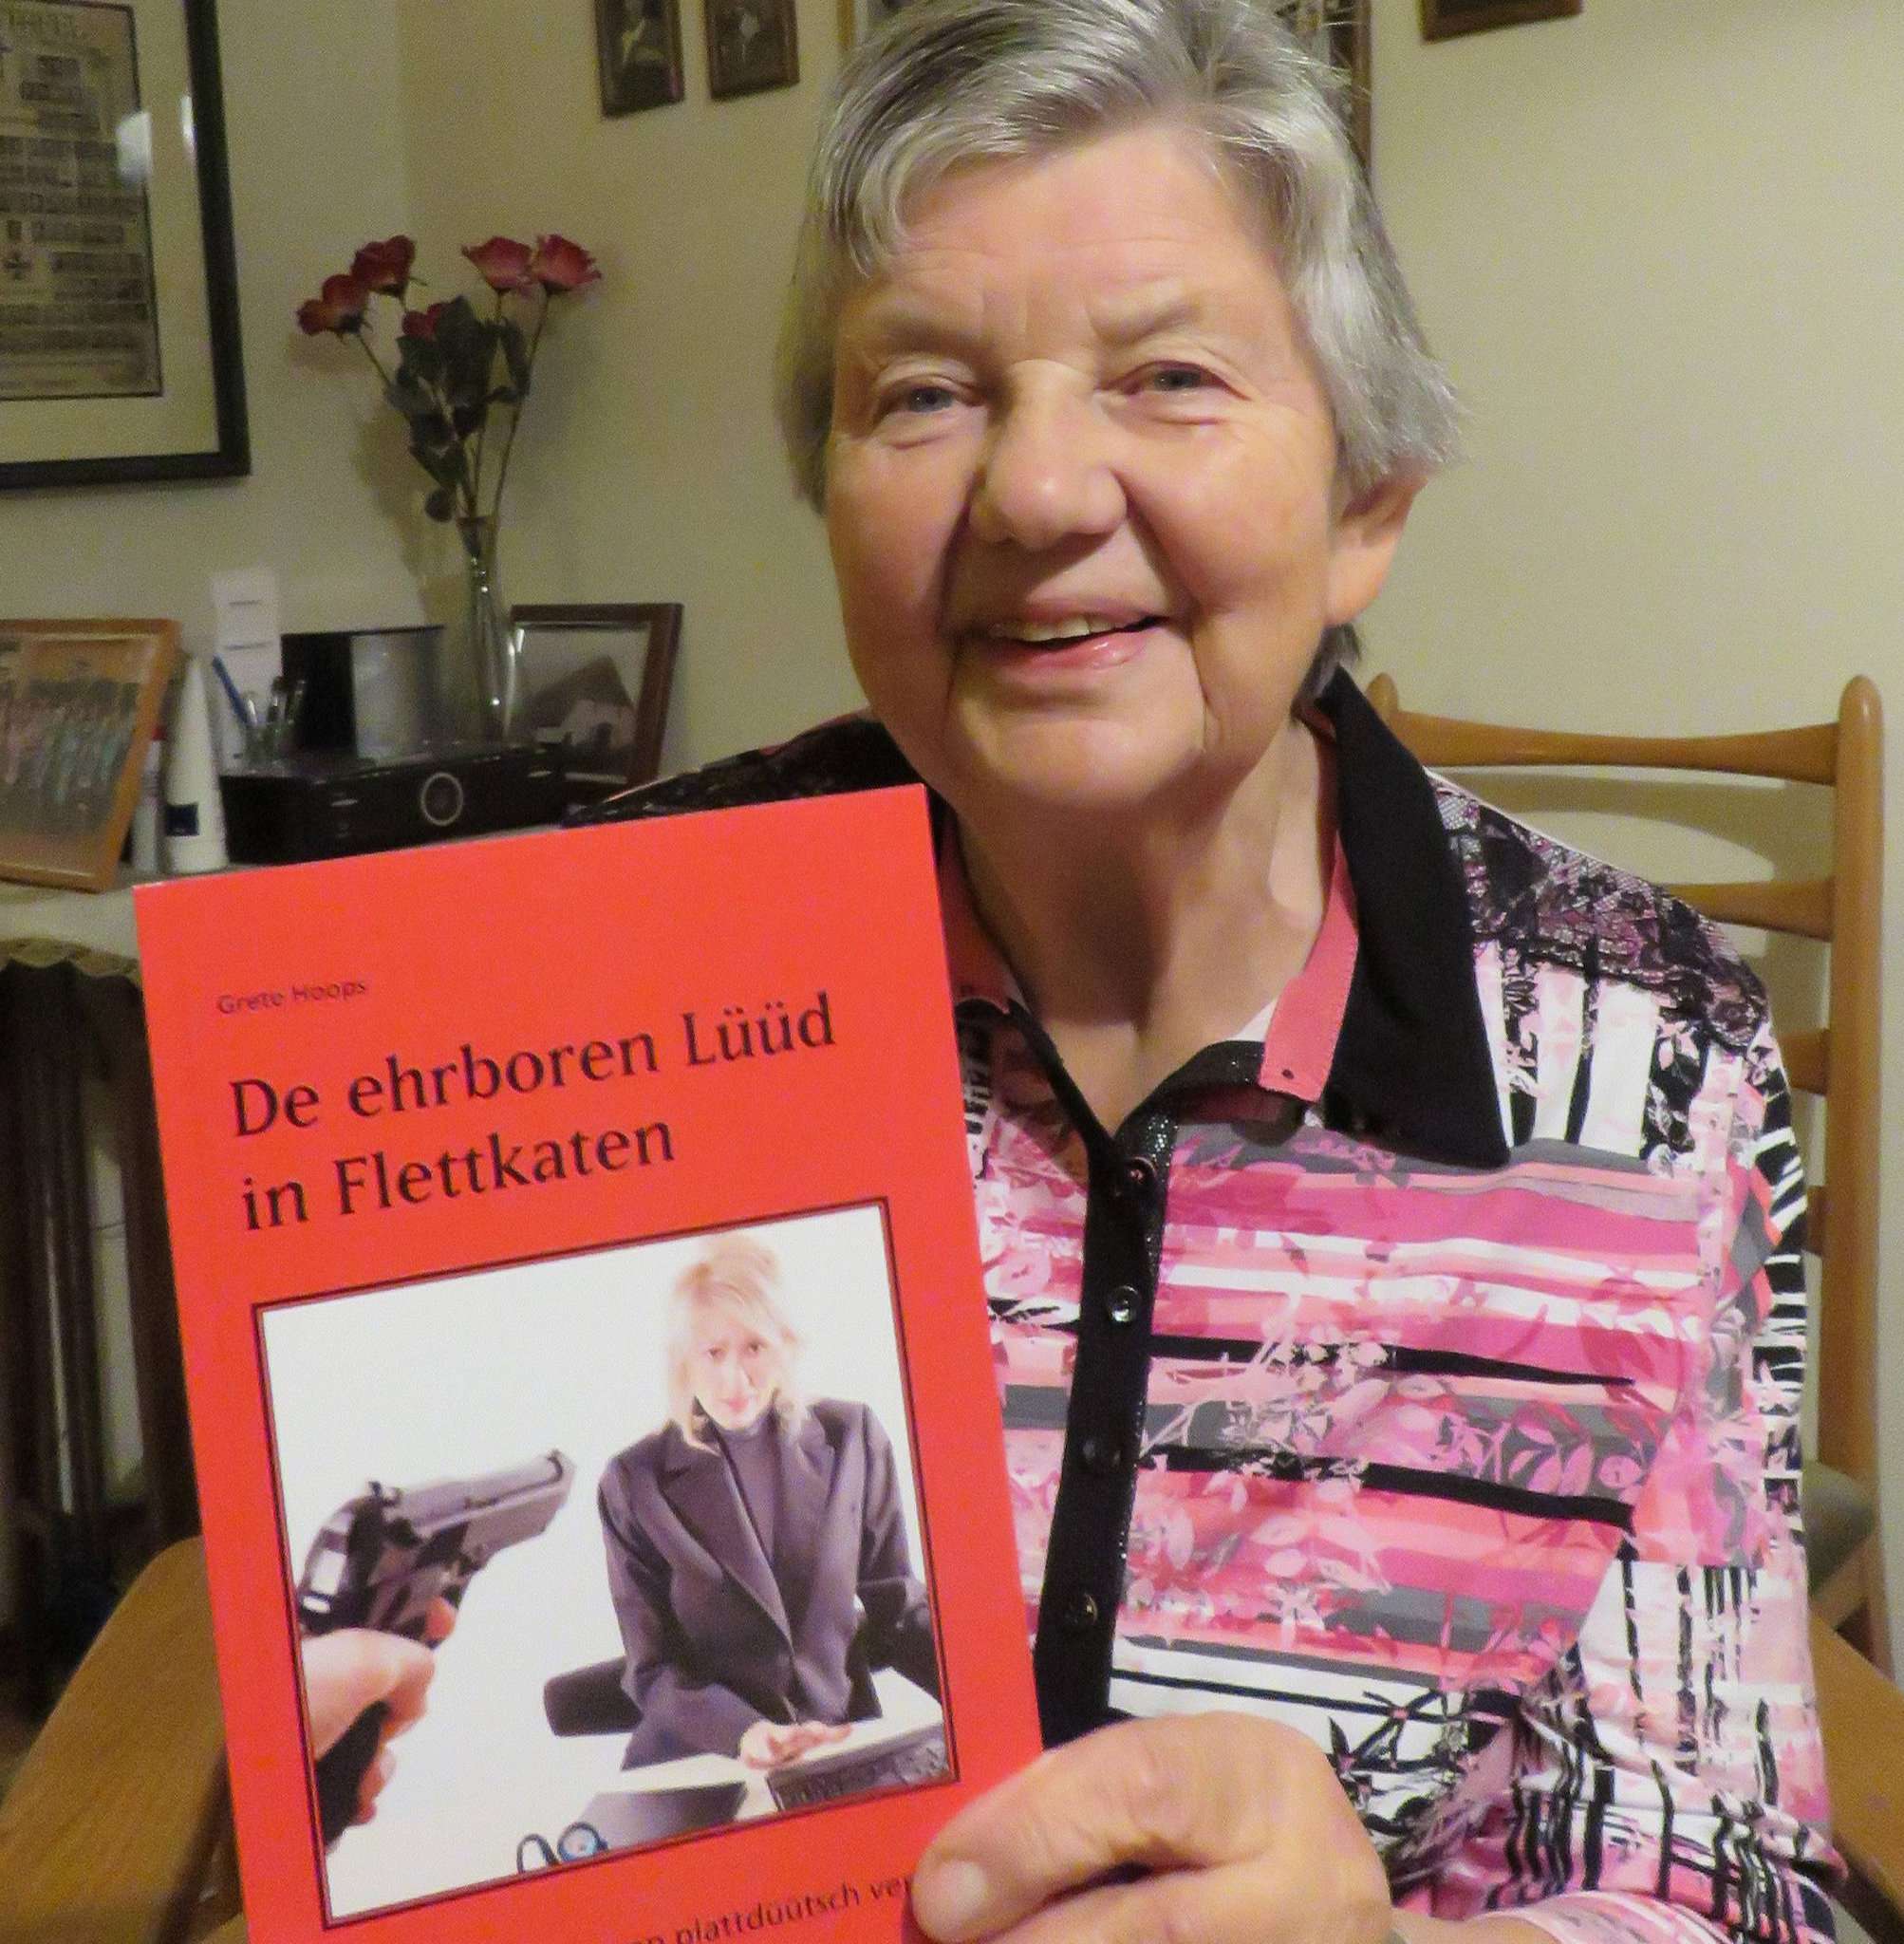 Grete Hoops wendet sich mit ihrem neuesten Buch der Kriminalistik zu. Foto: Elke Keppler-Rosenau